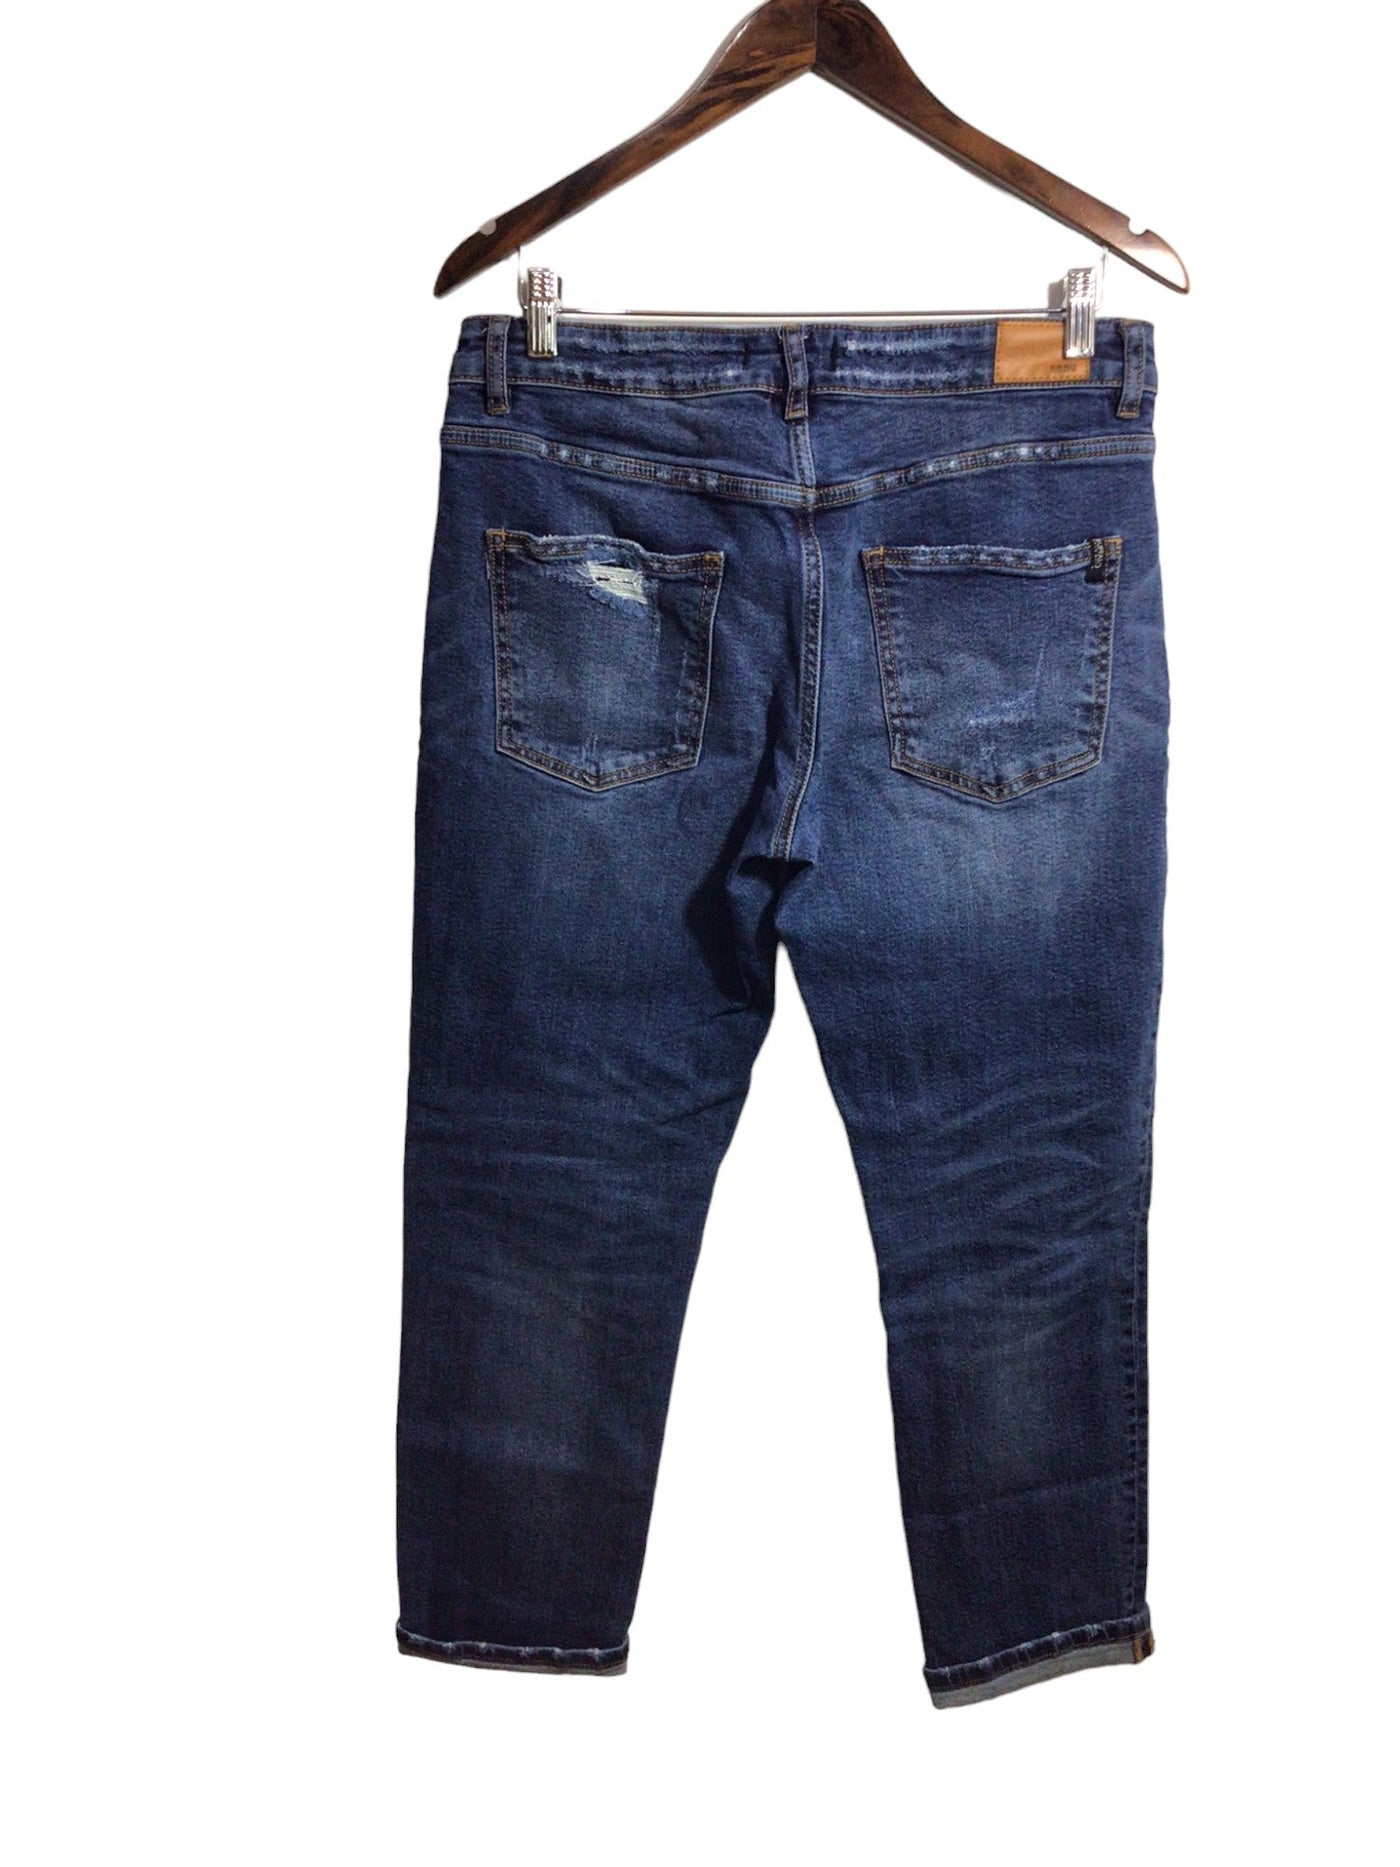 BUFFALO BY DAVID BITTON Women Straight-Legged Jeans Regular fit in Blue - Size 29 | 34.99 $ KOOP